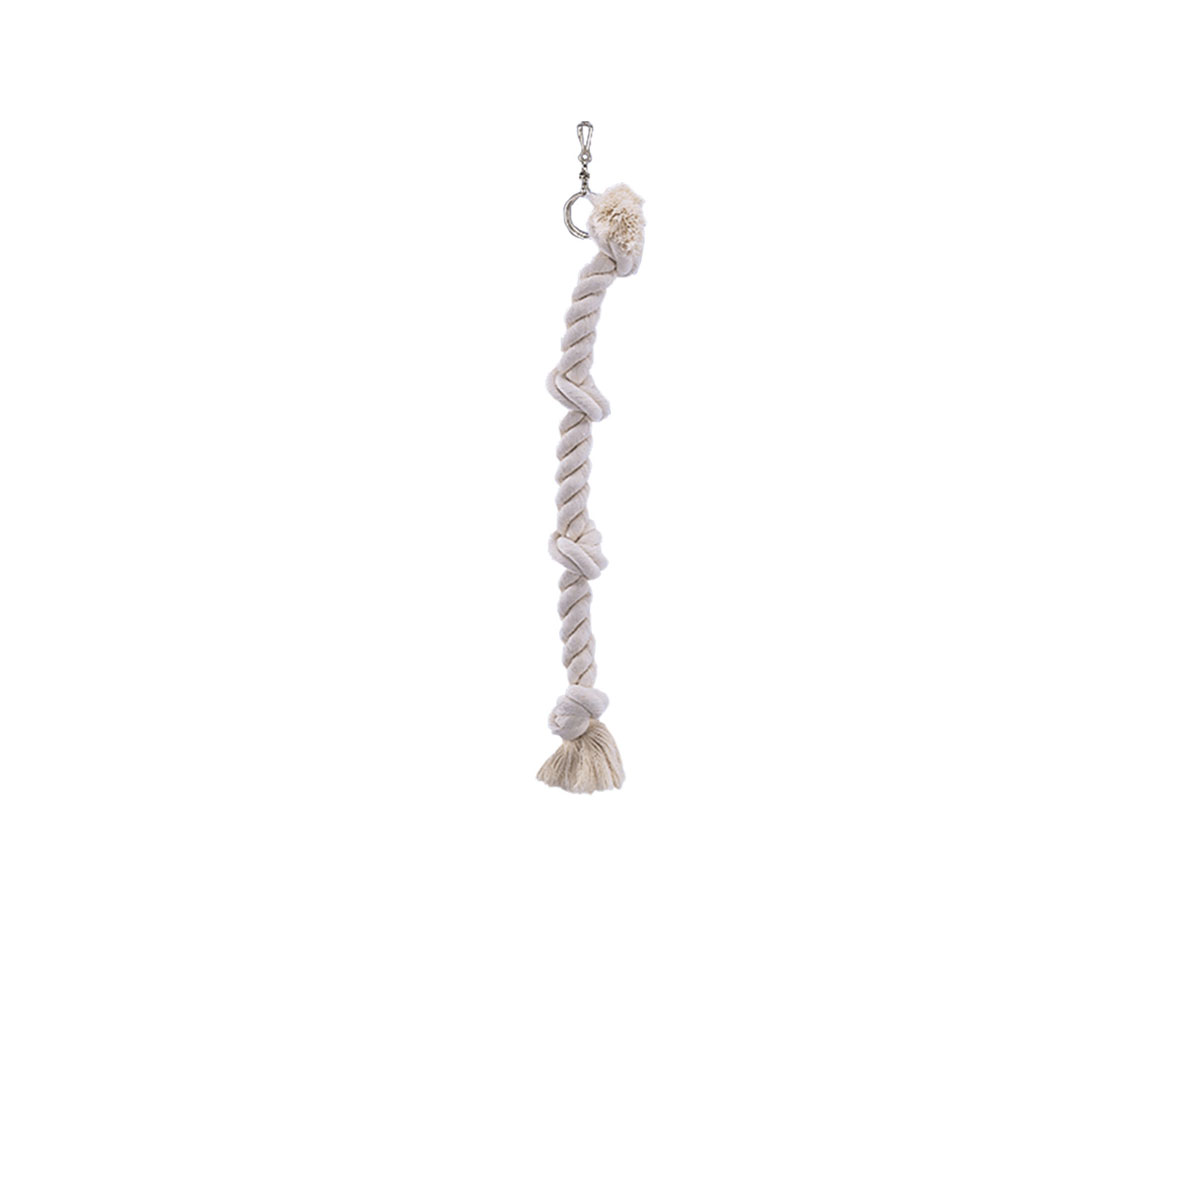 Kletterseil Baumwolle „Cage Toy“, weiß, 38 cm, 3 Knoten